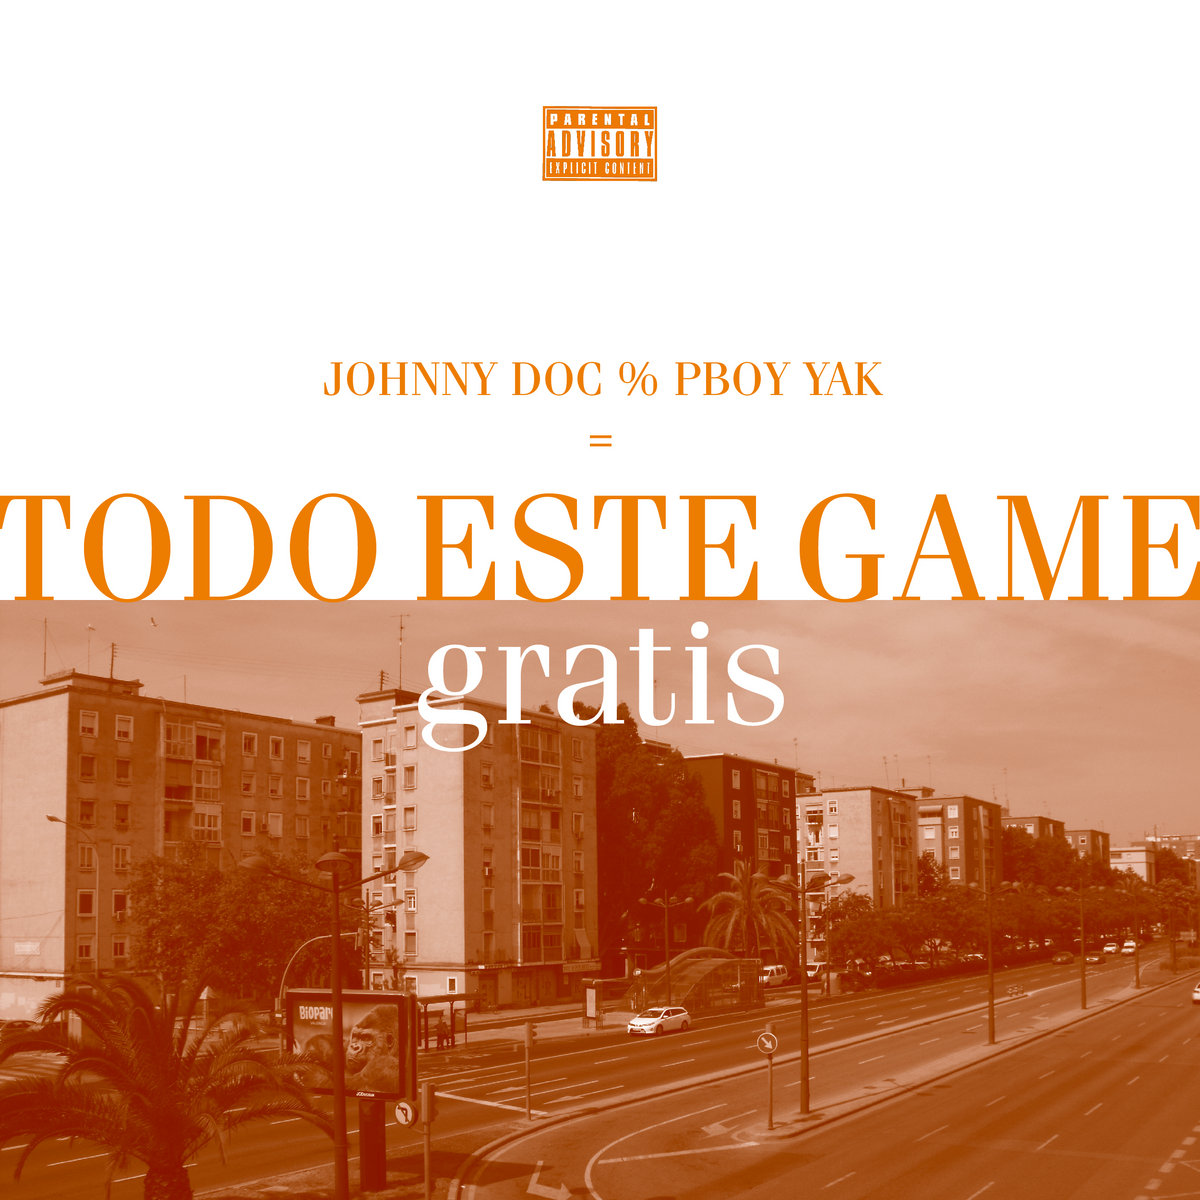 T0d0_este_game_gratis_johnny_doc___pboy_yak